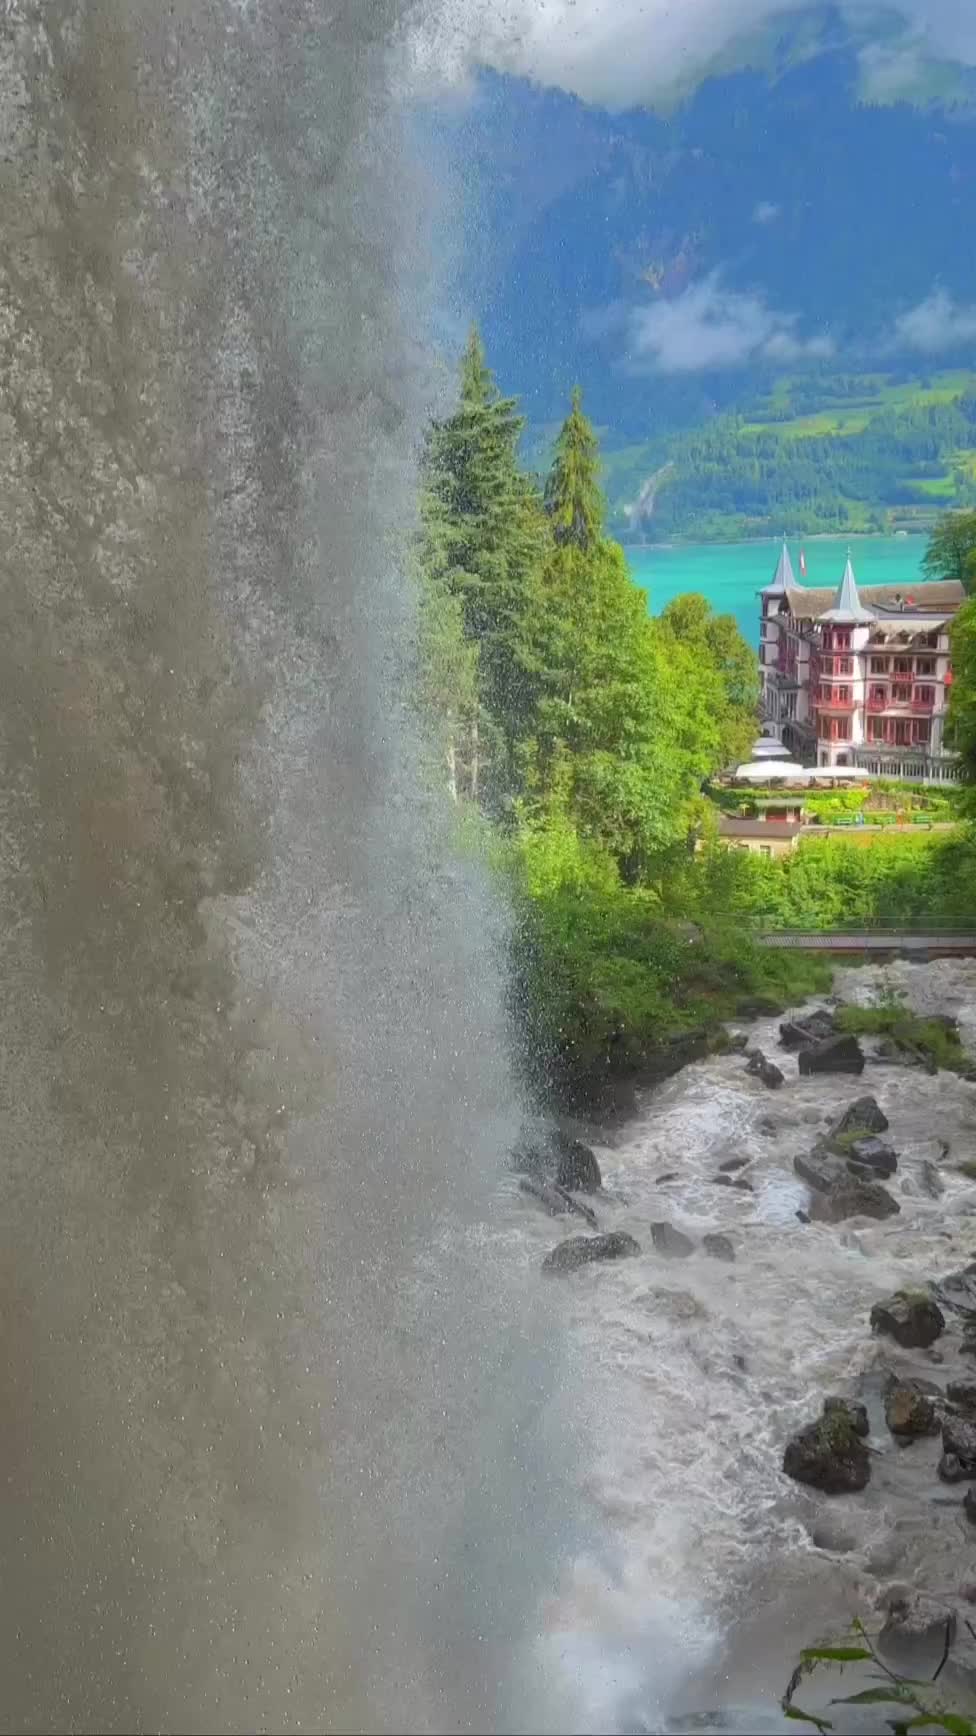 Stunning Giessbach Waterfall in Brienz, Switzerland